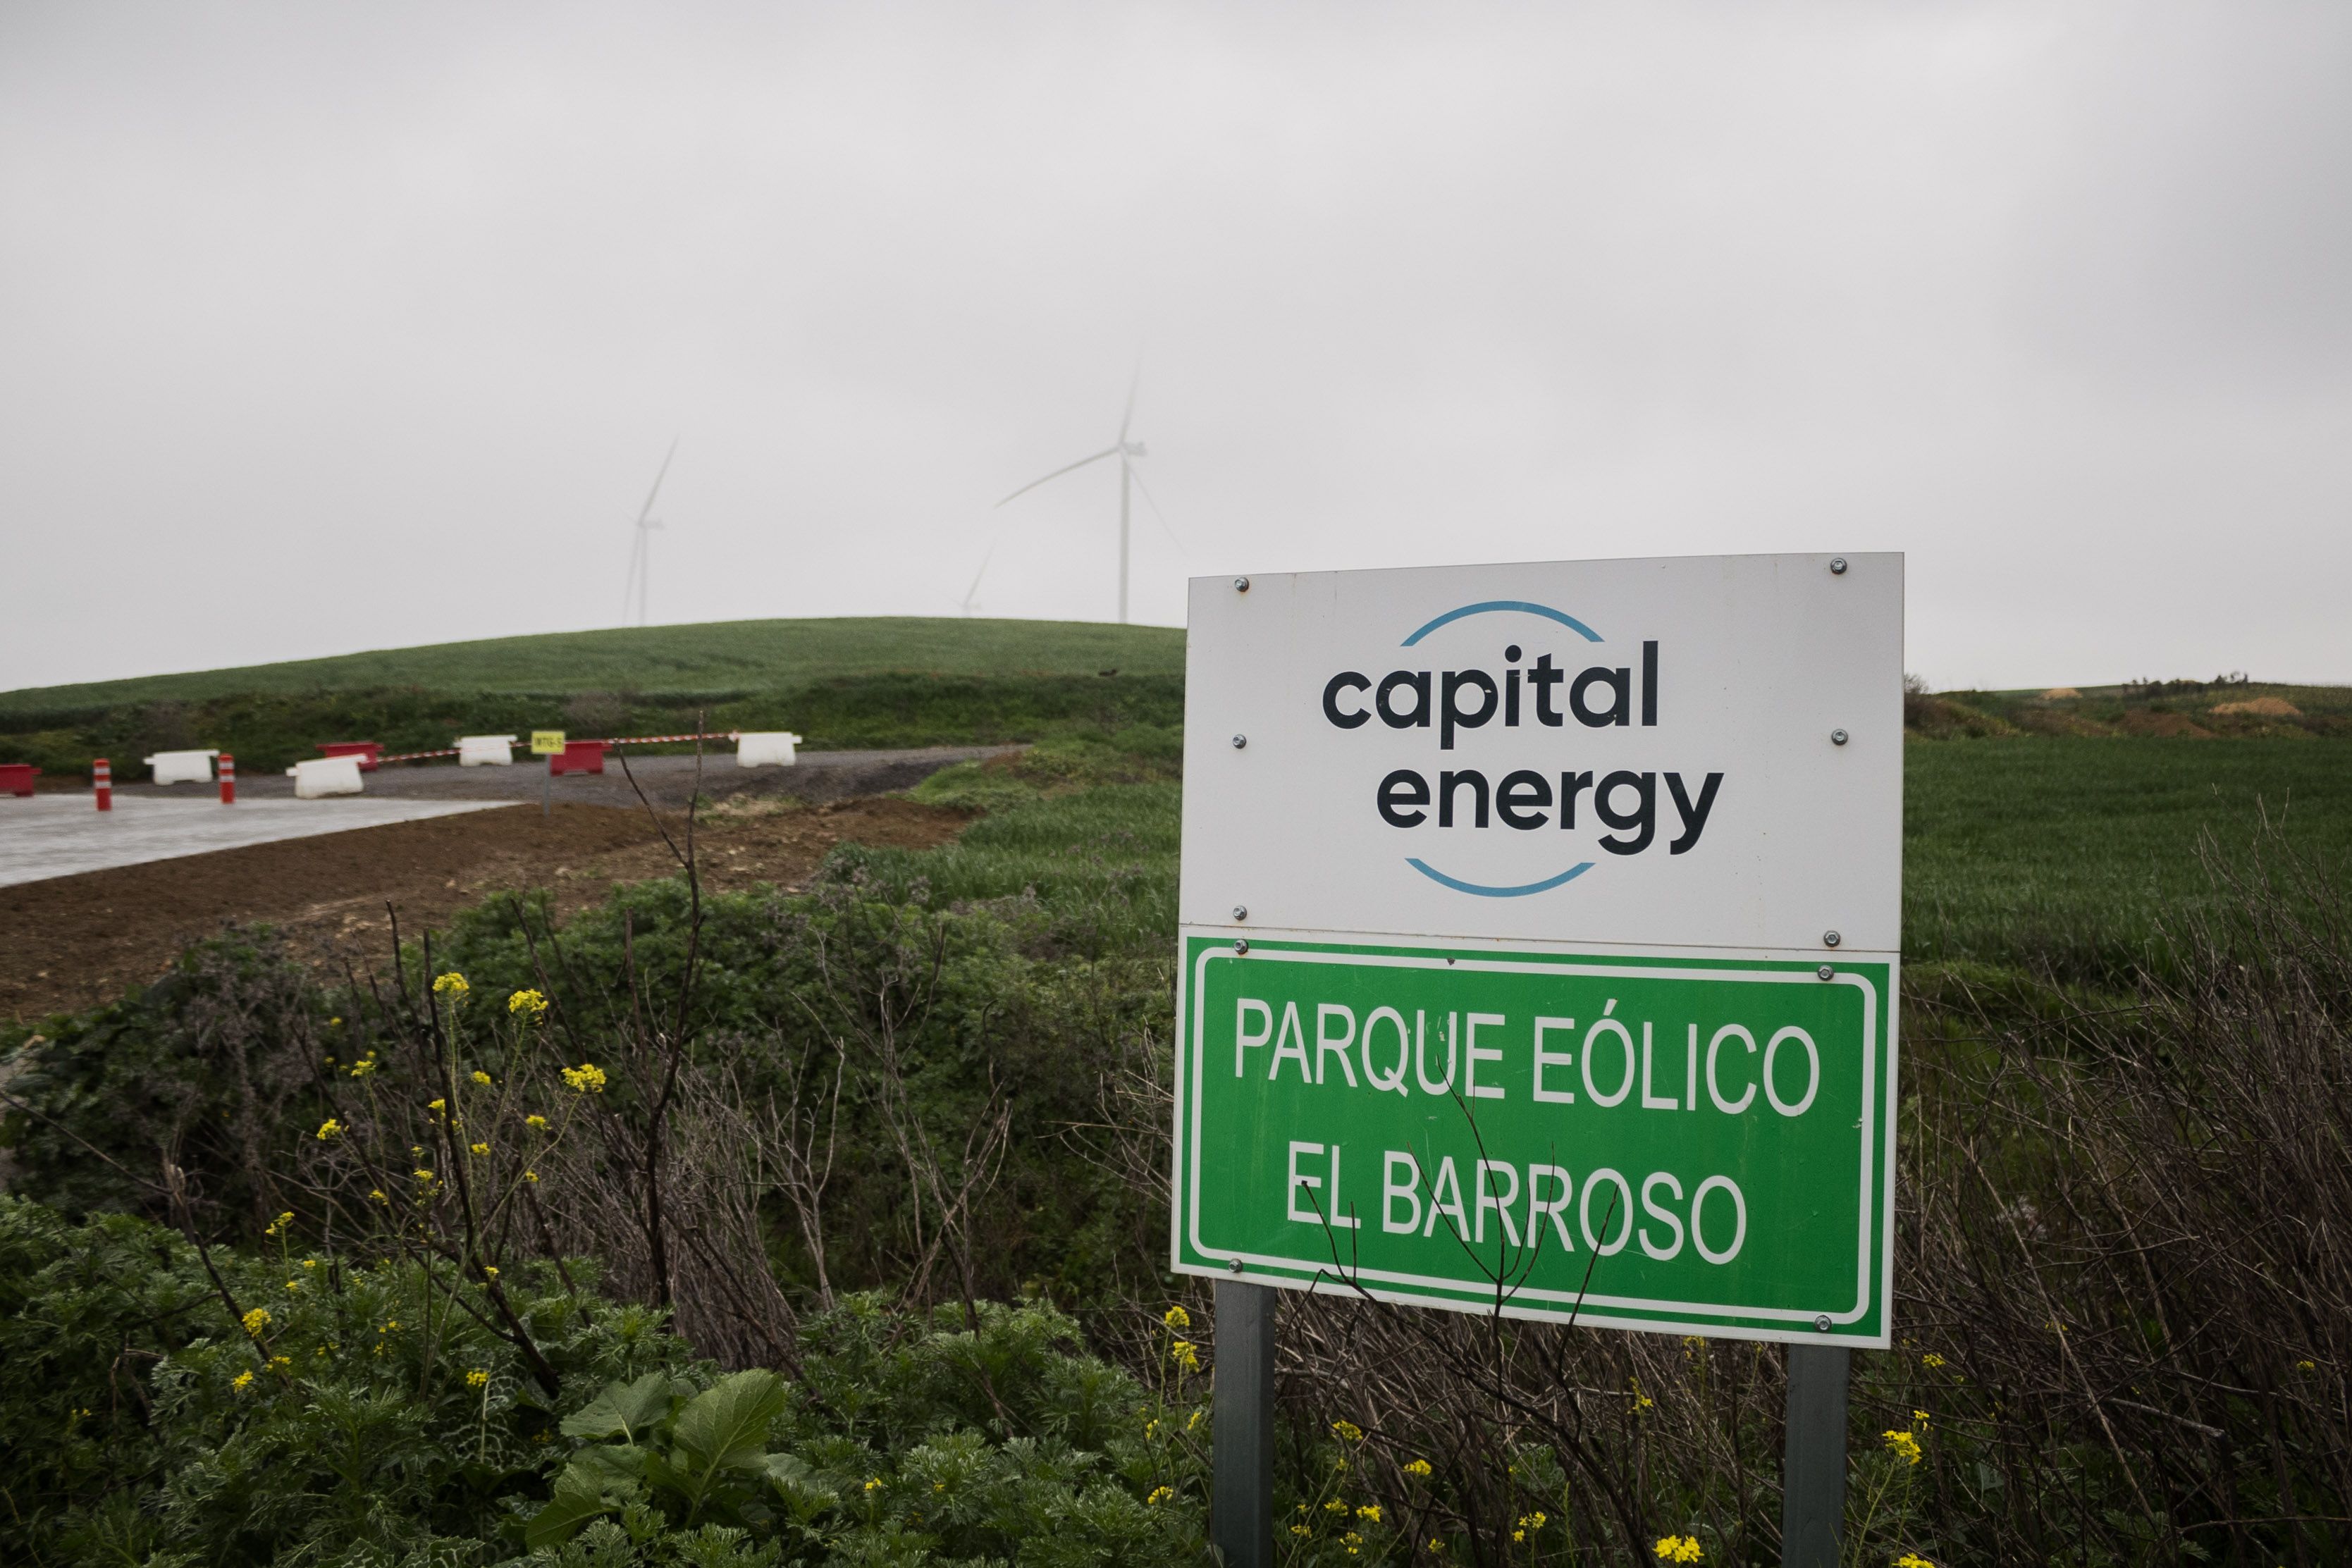 Obras en el parque eólico de El Barroso, casi finalizando su construcción entre viñedos del Marco de Jerez, en una imagen reciente.